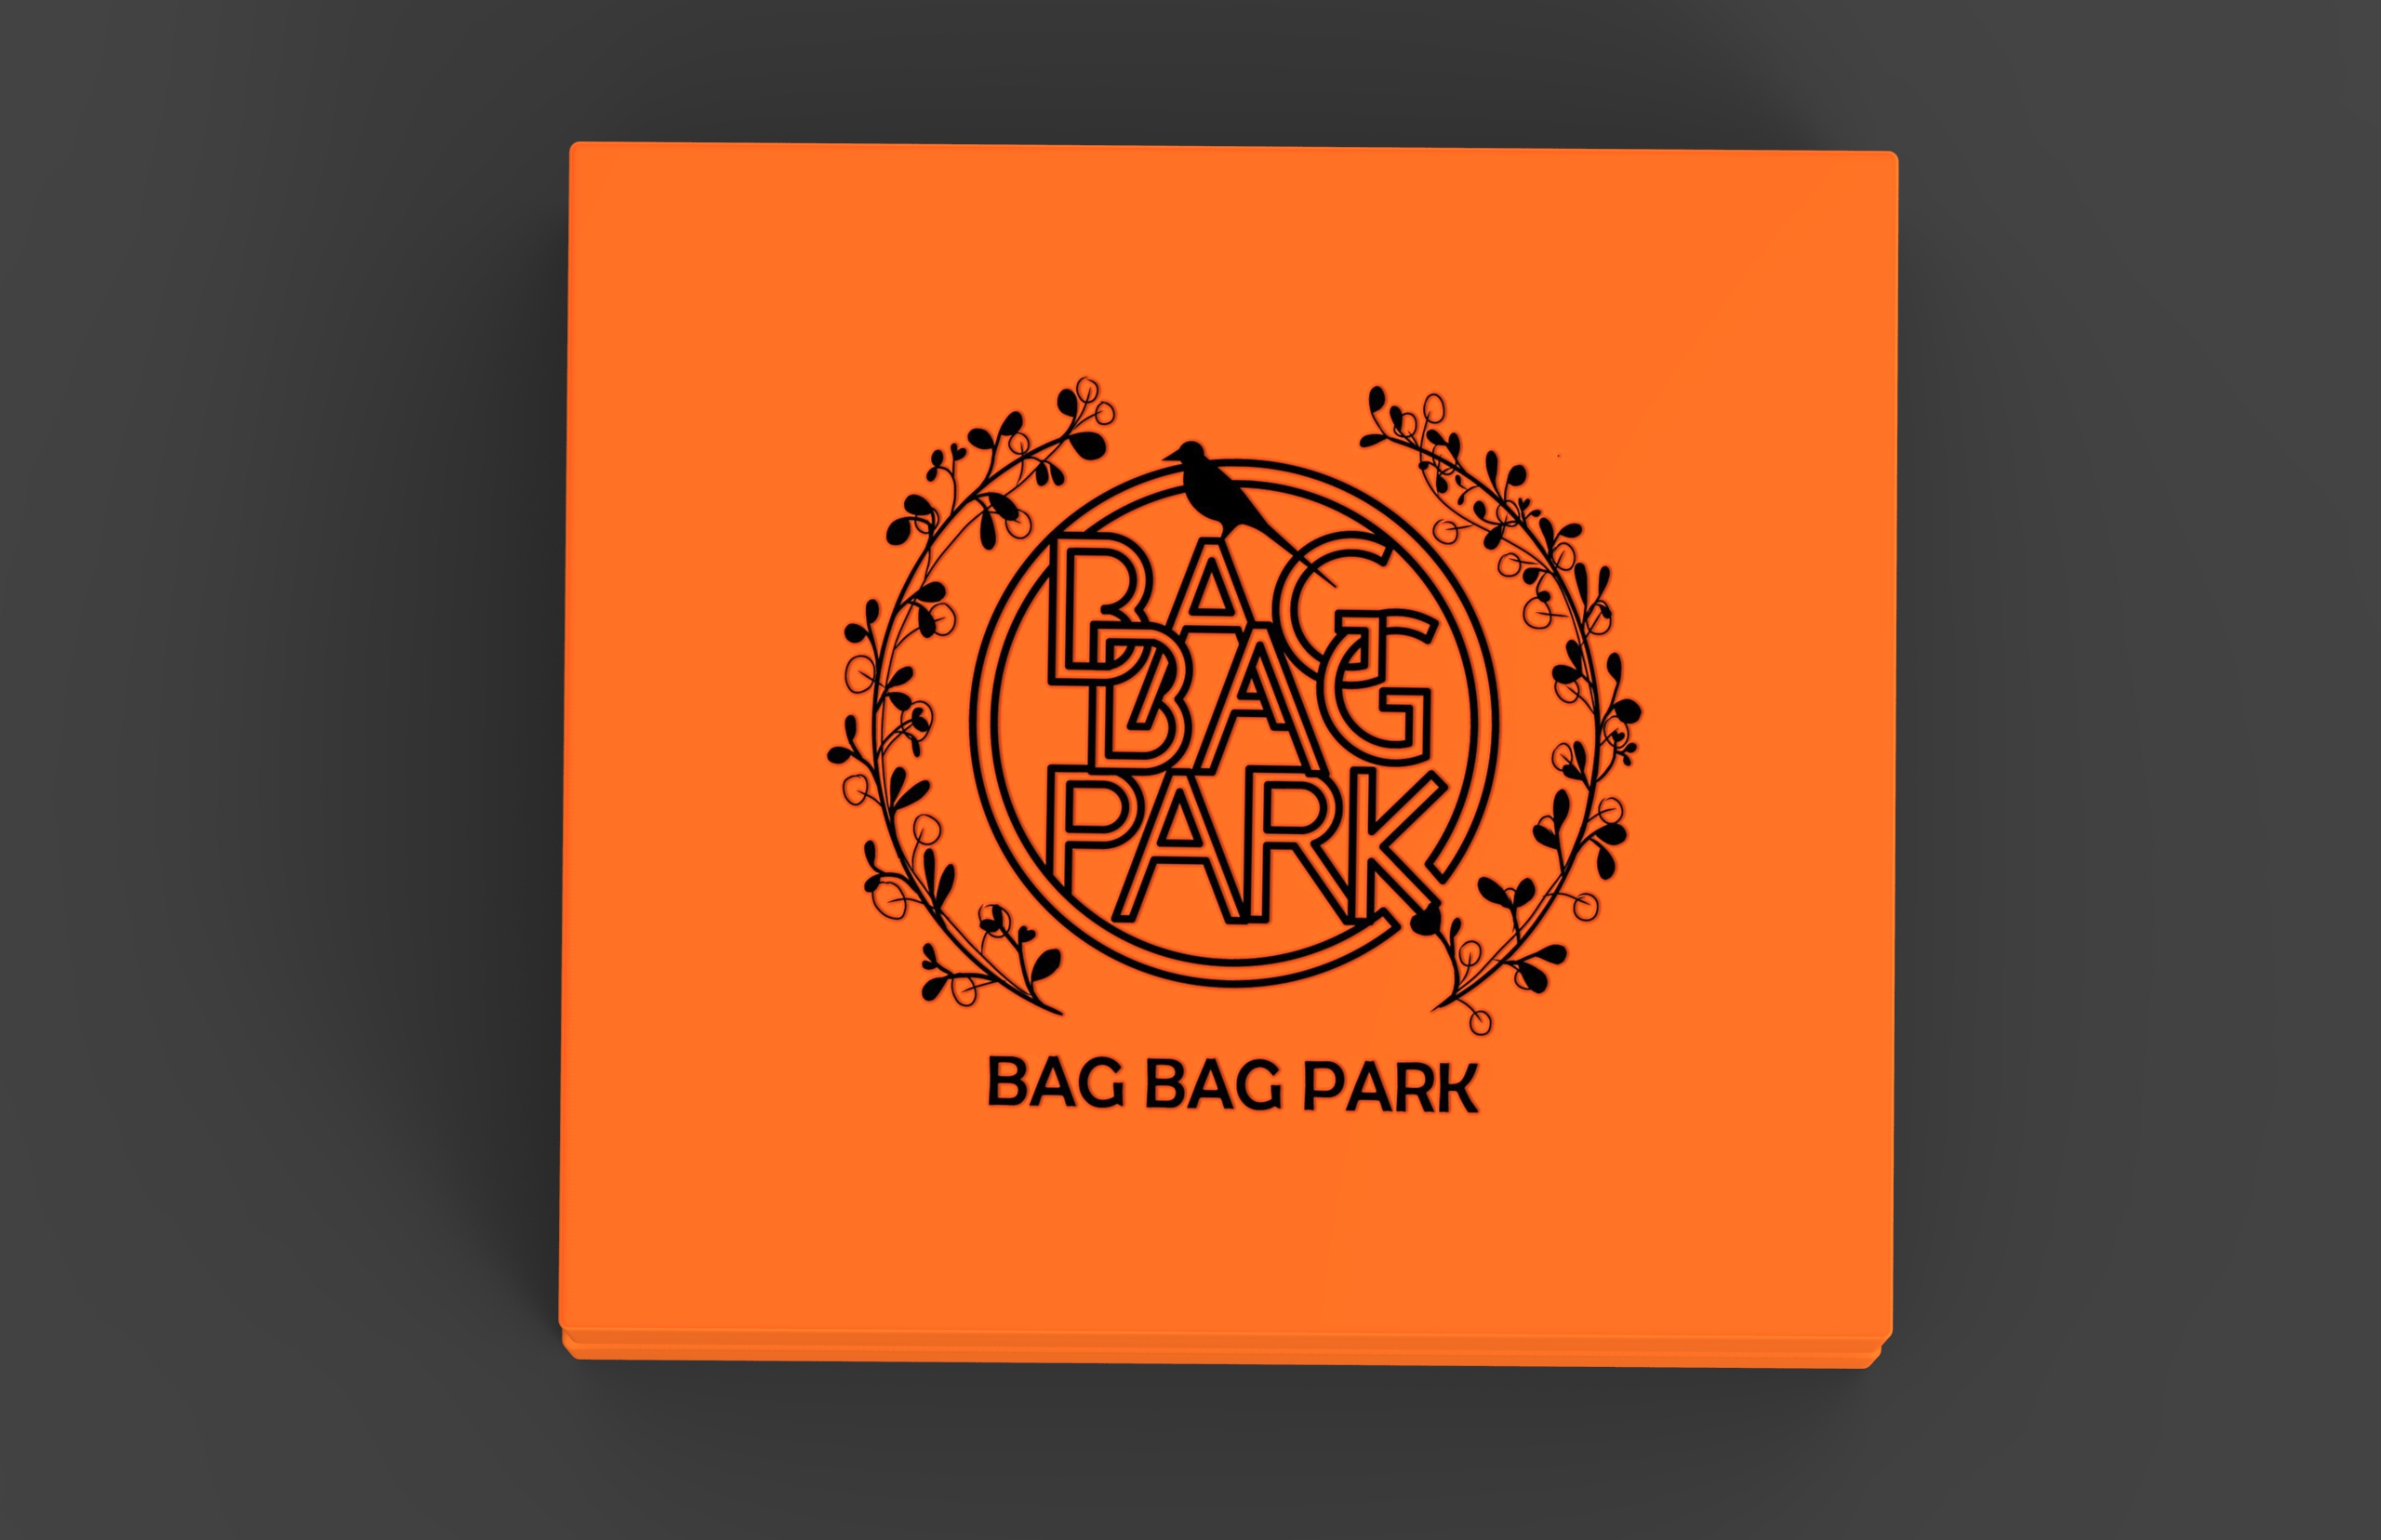 包包公园产品形象设计平面设计